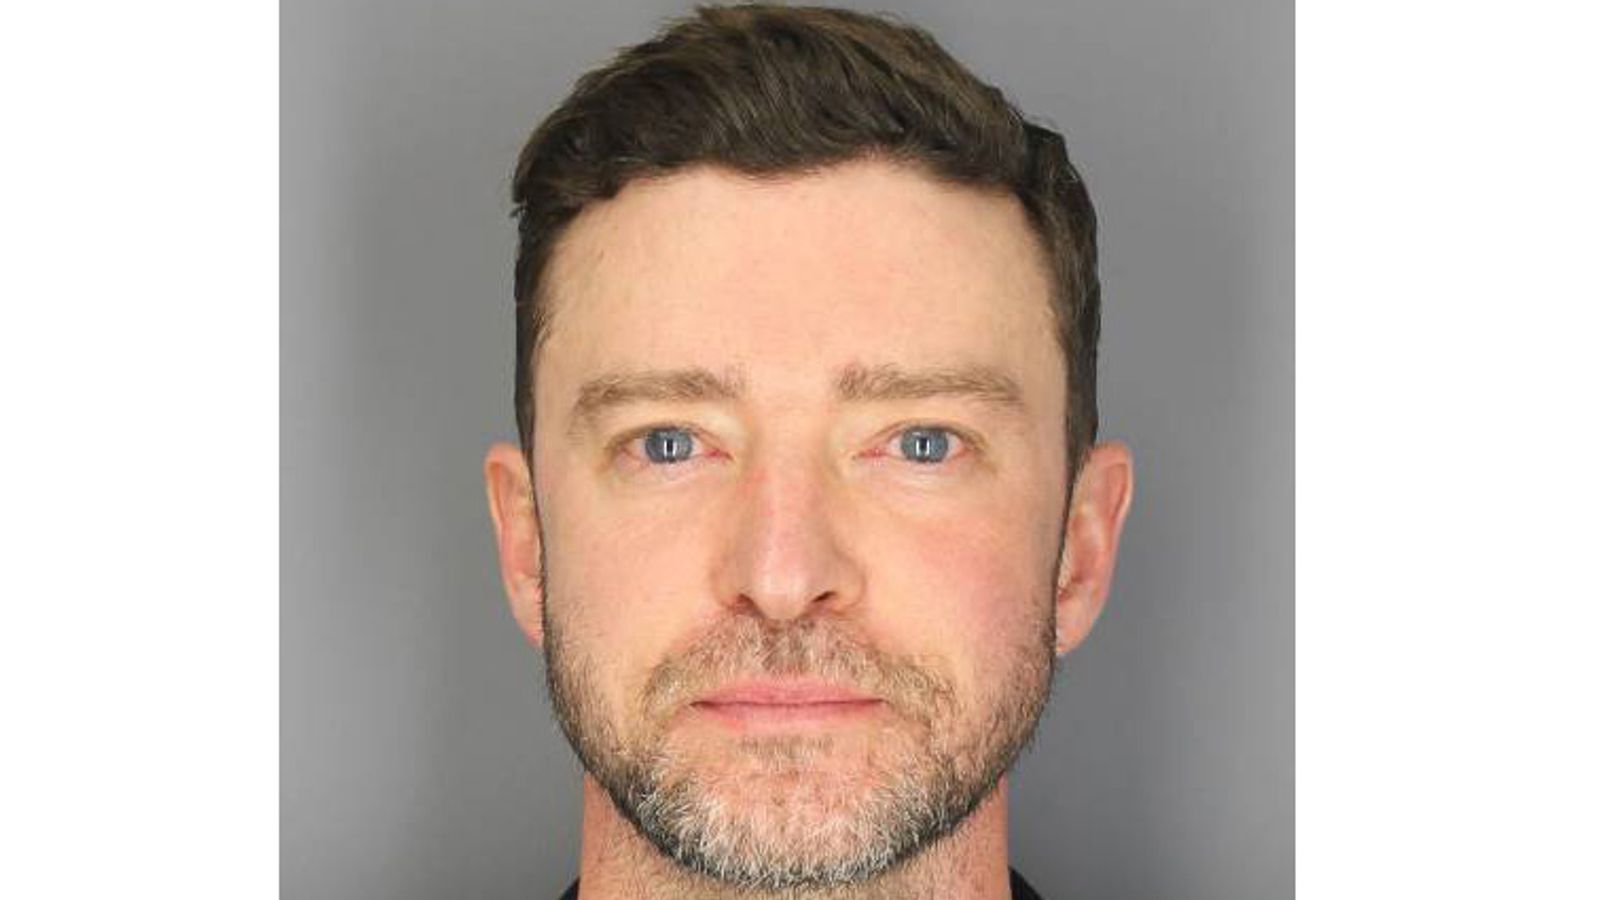 Justin Timberlake's mugshot released after his arrest